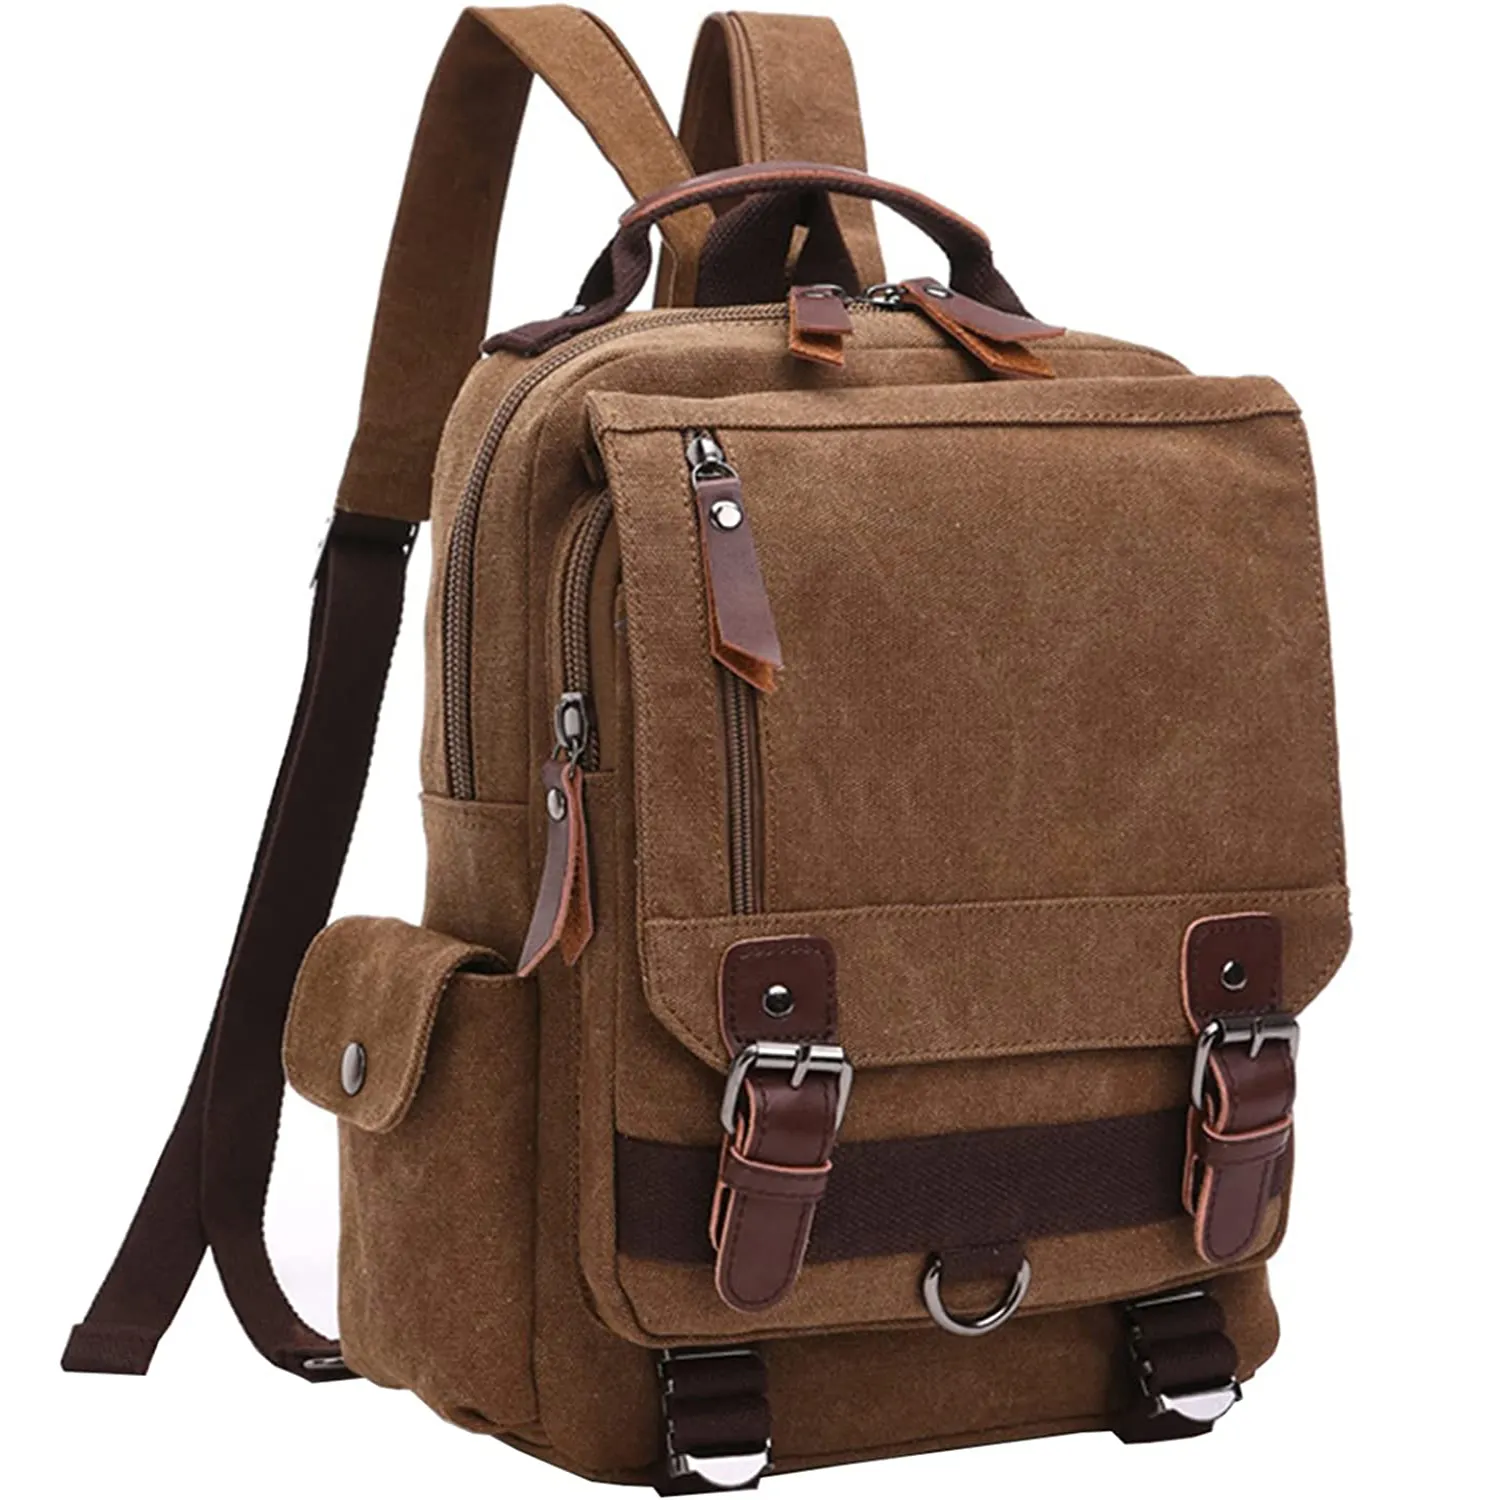 Fashion Multifunctional Canvas Cross Body Messenger Bag Shoulder Sling Backpack Travel Rucksack